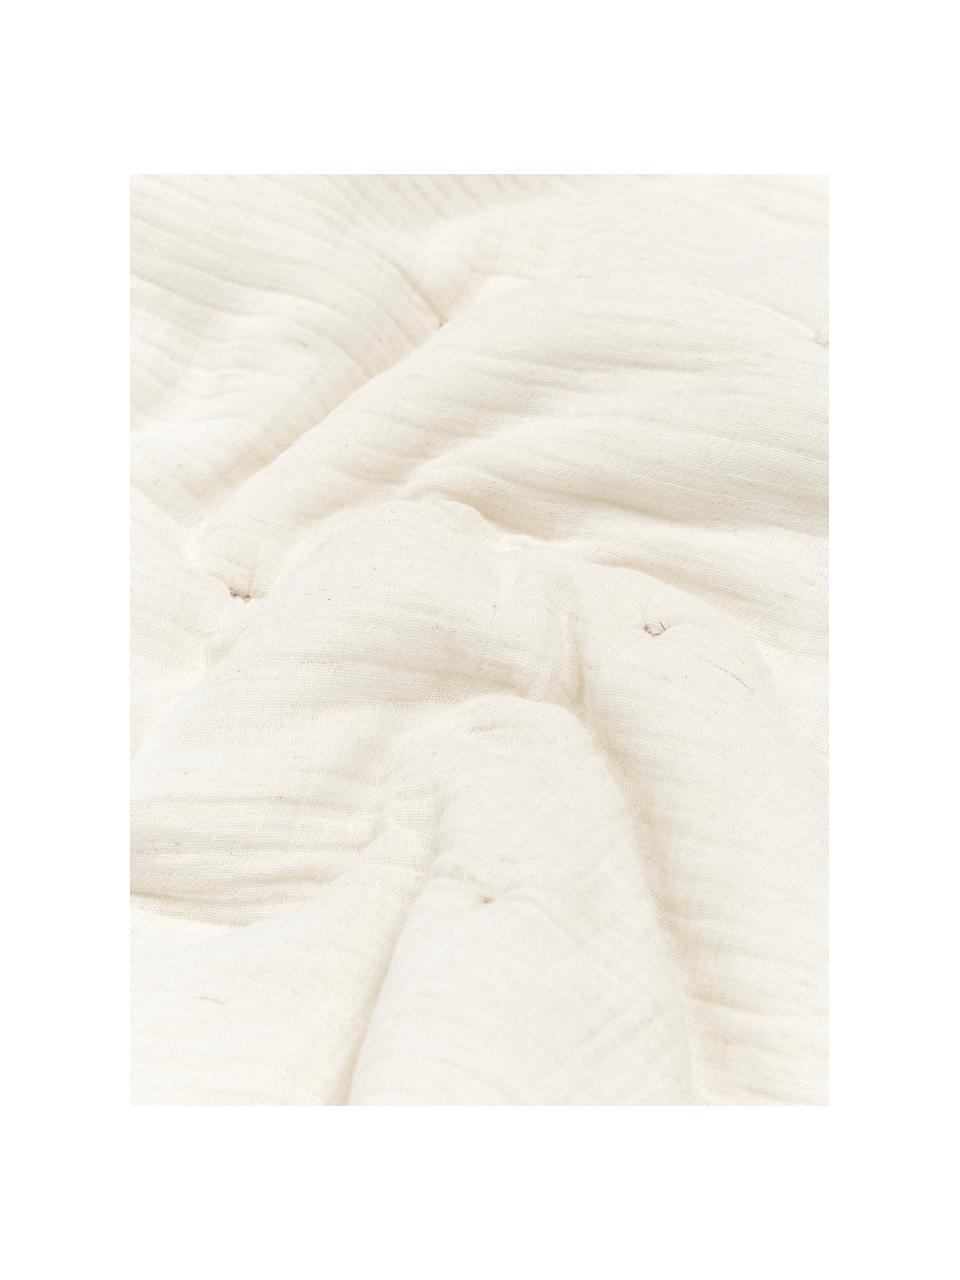 Wattierte Tagesdecke Lune aus Baumwollmusselin in Beige, Bezug: 100% Baumwolle, Beige, B 260 x L 260 cm (für Betten bis 200 x 200 cm)